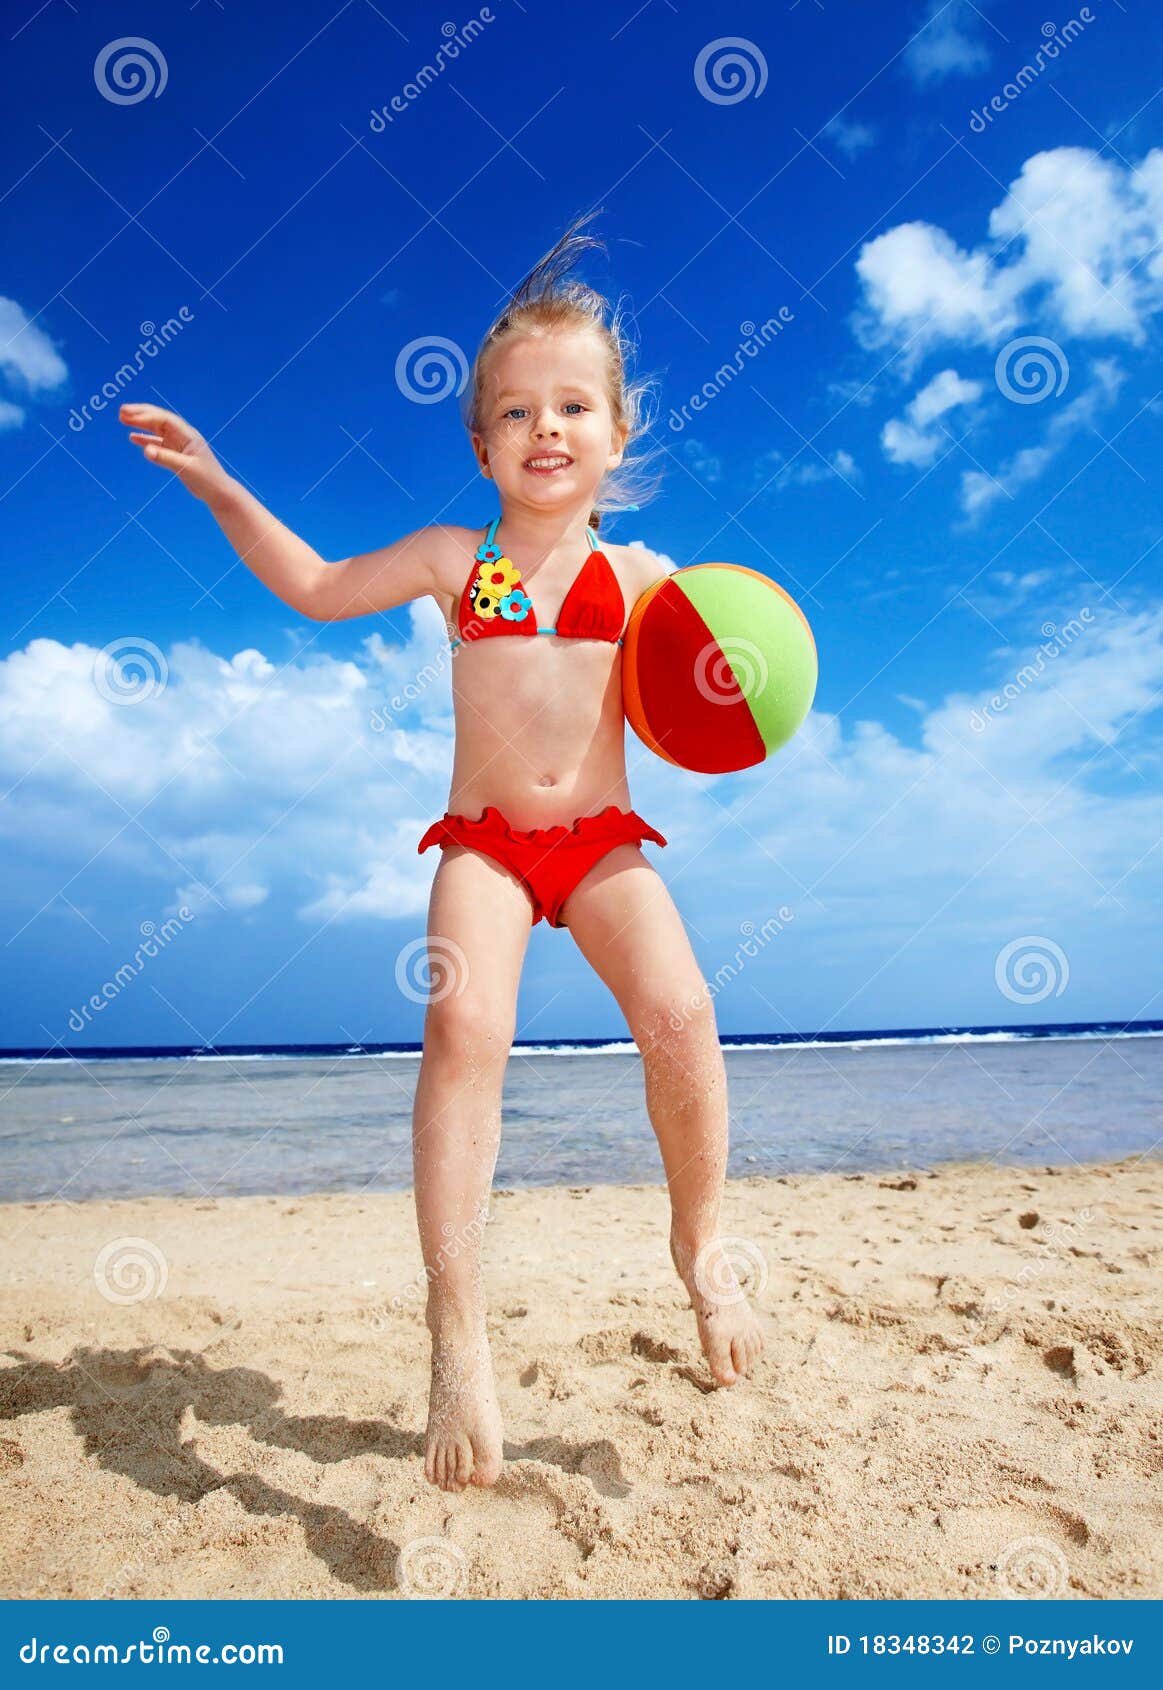 с детьми голым на пляж фото 56